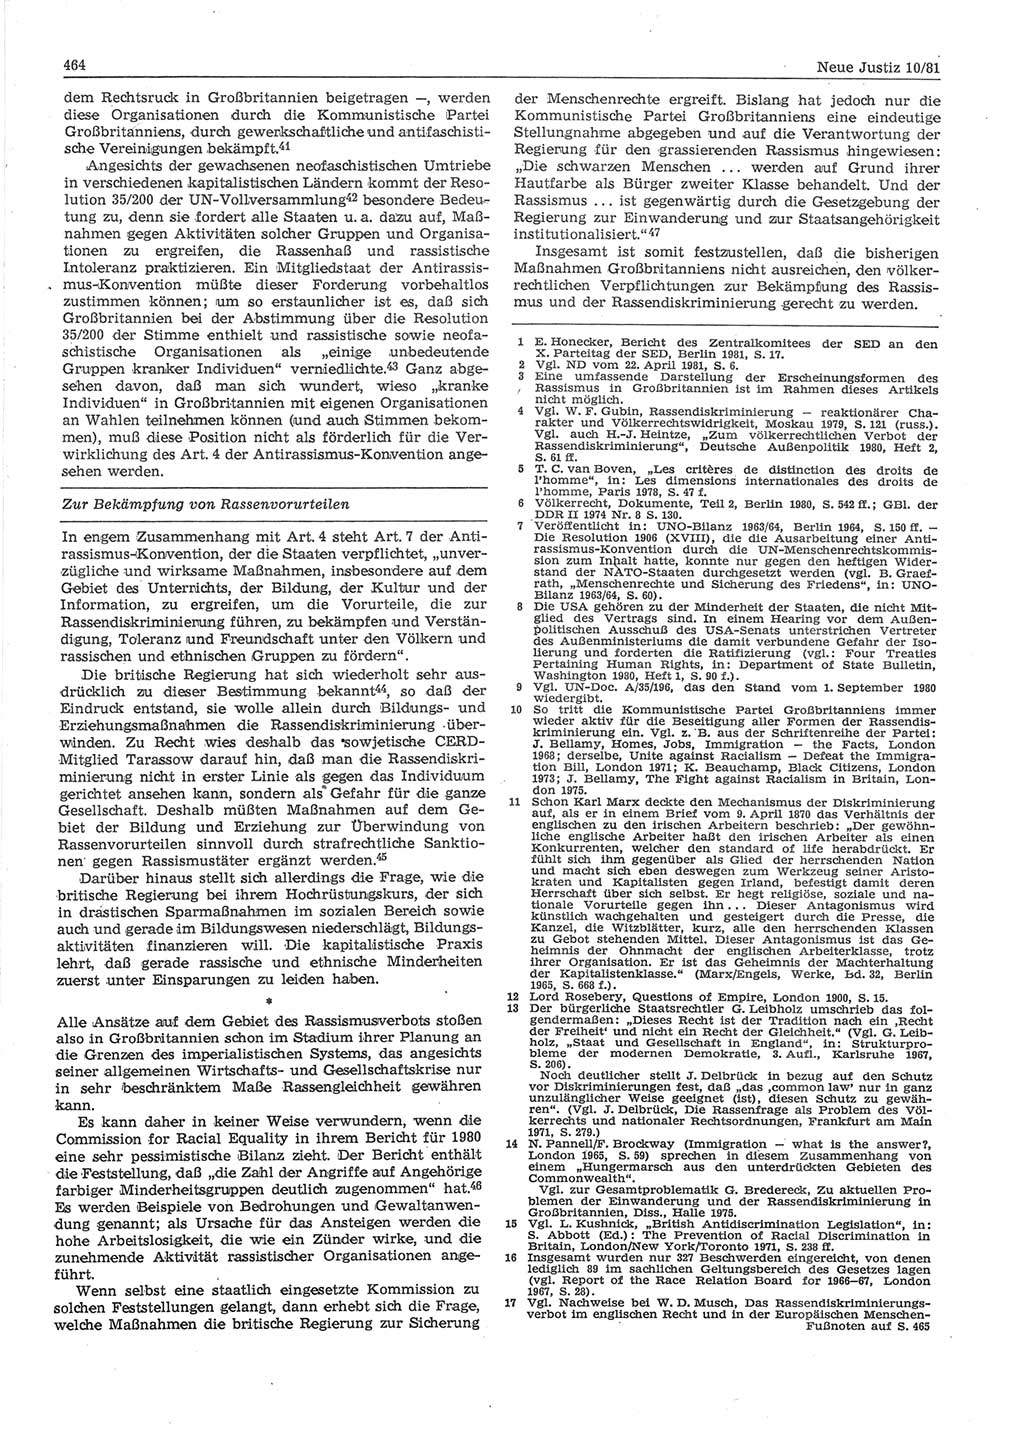 Neue Justiz (NJ), Zeitschrift für sozialistisches Recht und Gesetzlichkeit [Deutsche Demokratische Republik (DDR)], 35. Jahrgang 1981, Seite 464 (NJ DDR 1981, S. 464)